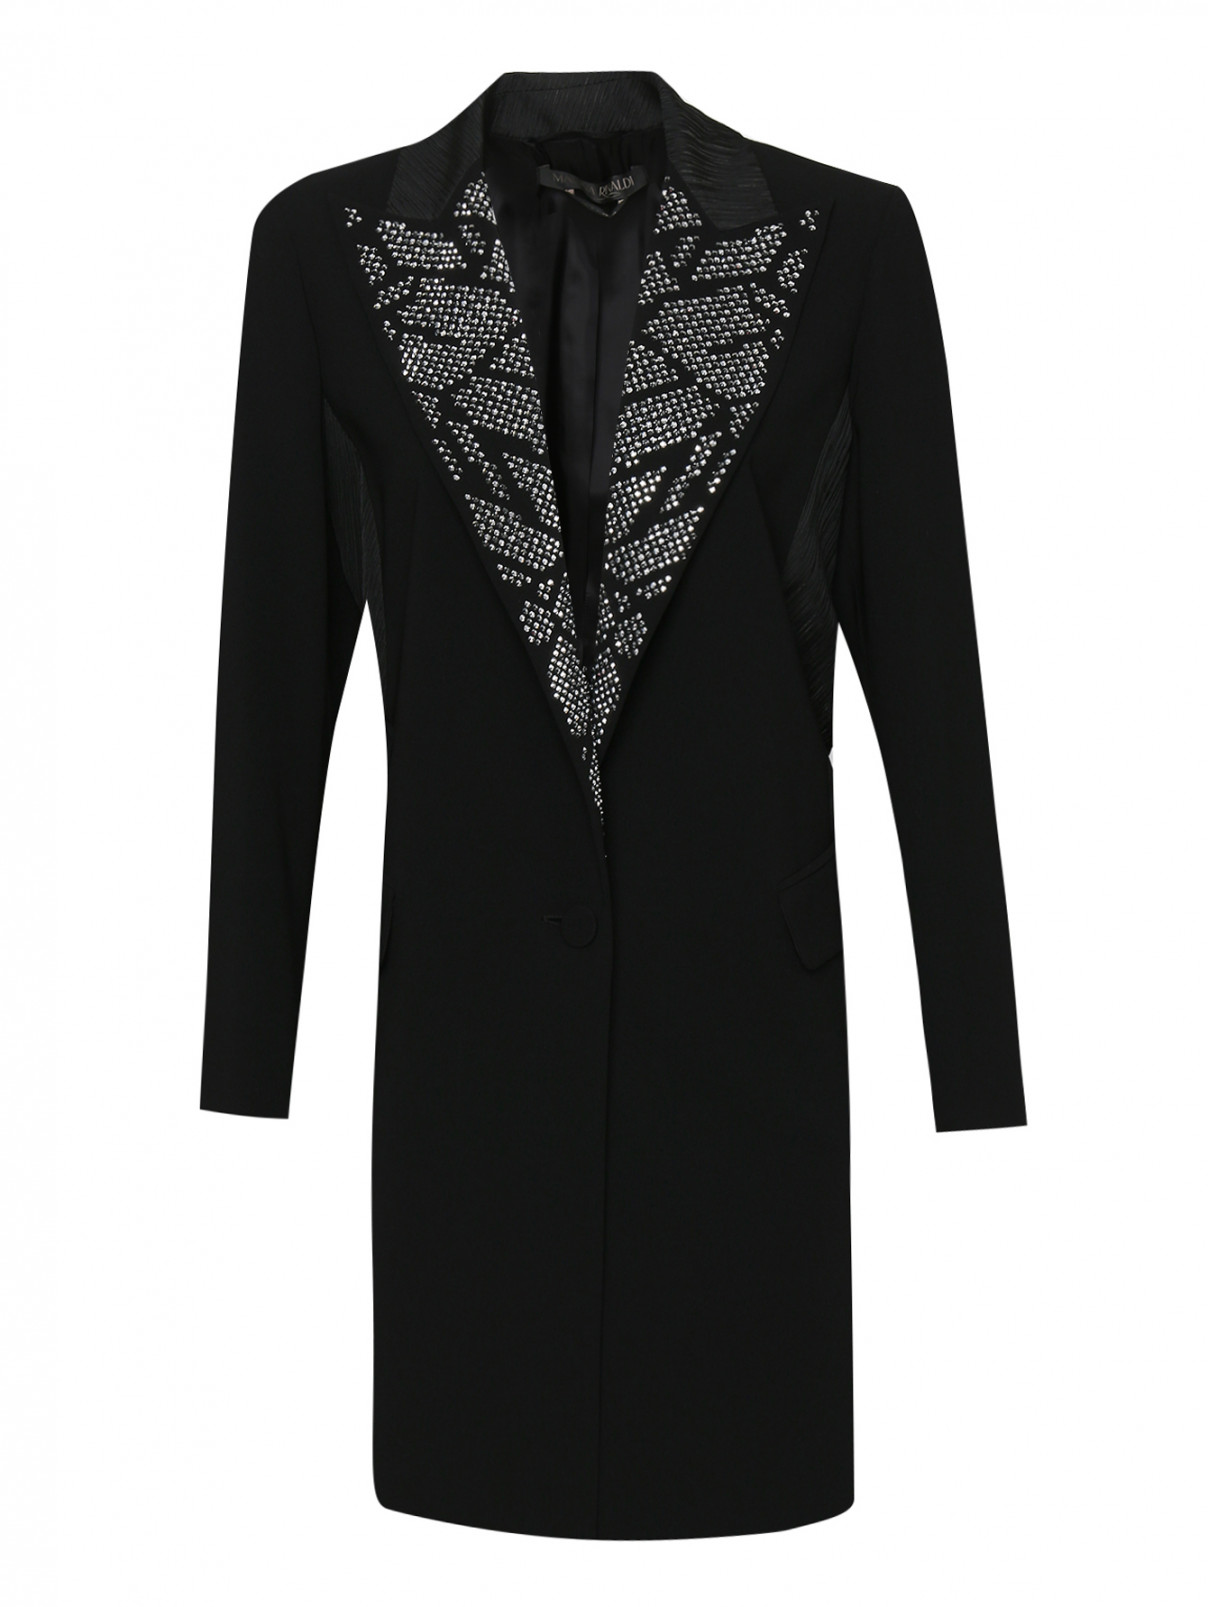 Пальто, декорированное стразами Marina Rinaldi  –  Общий вид  – Цвет:  Черный